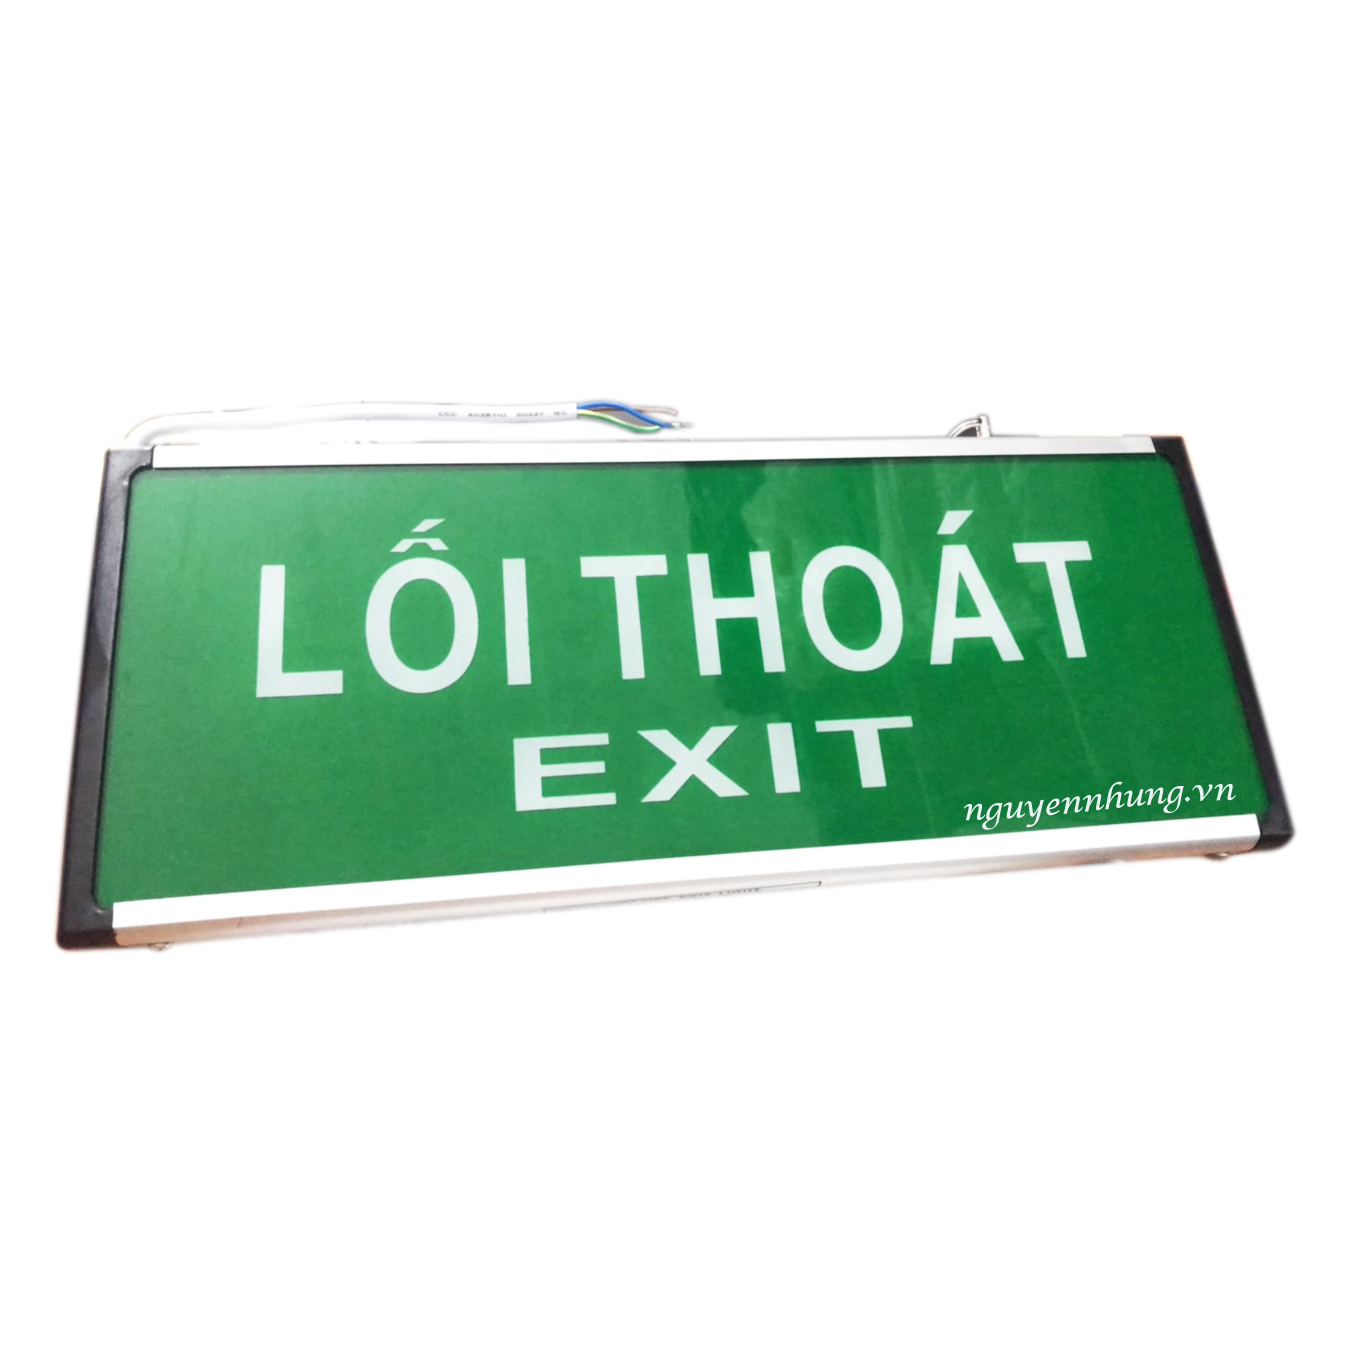 Đèn lối thoát exit